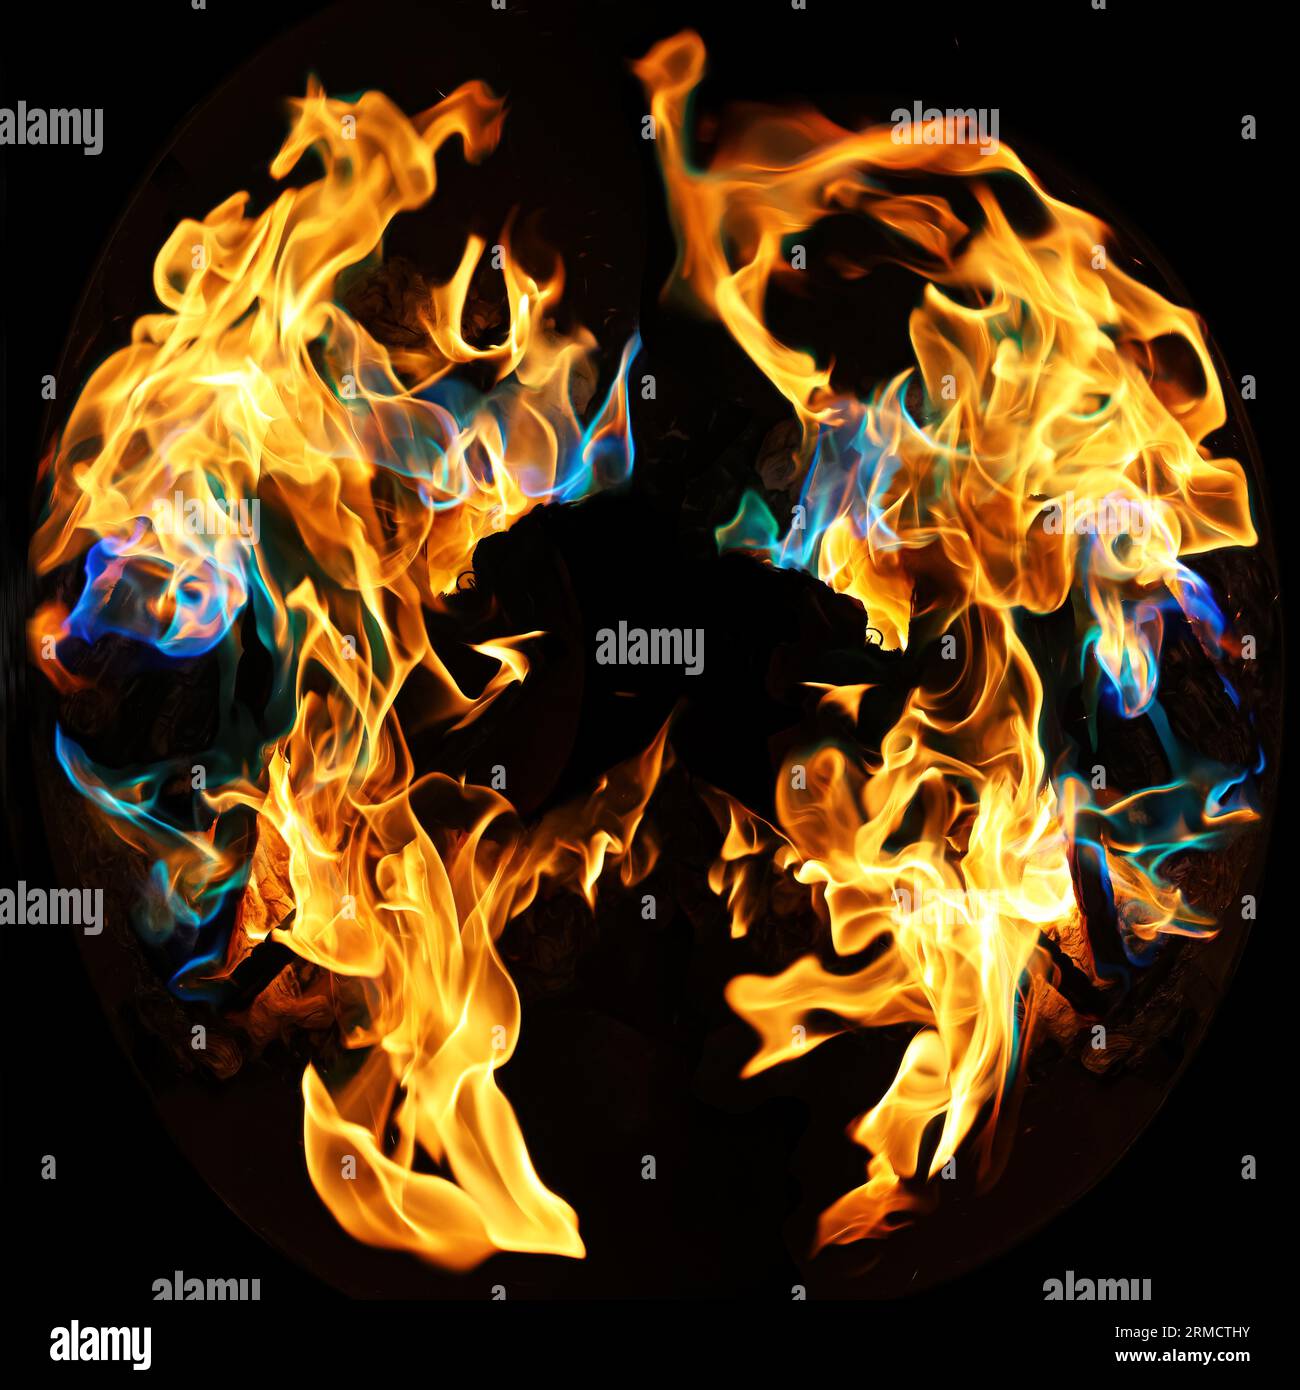 Feuer und Flammen, die die Hitze mit lebendigen Regenbogenfarben aus lustigen Fire Packs verbreiten. Diese farbenfrohen Fire-Art-Bilder können für Kunstdrucke lizenziert werden... Stockfoto